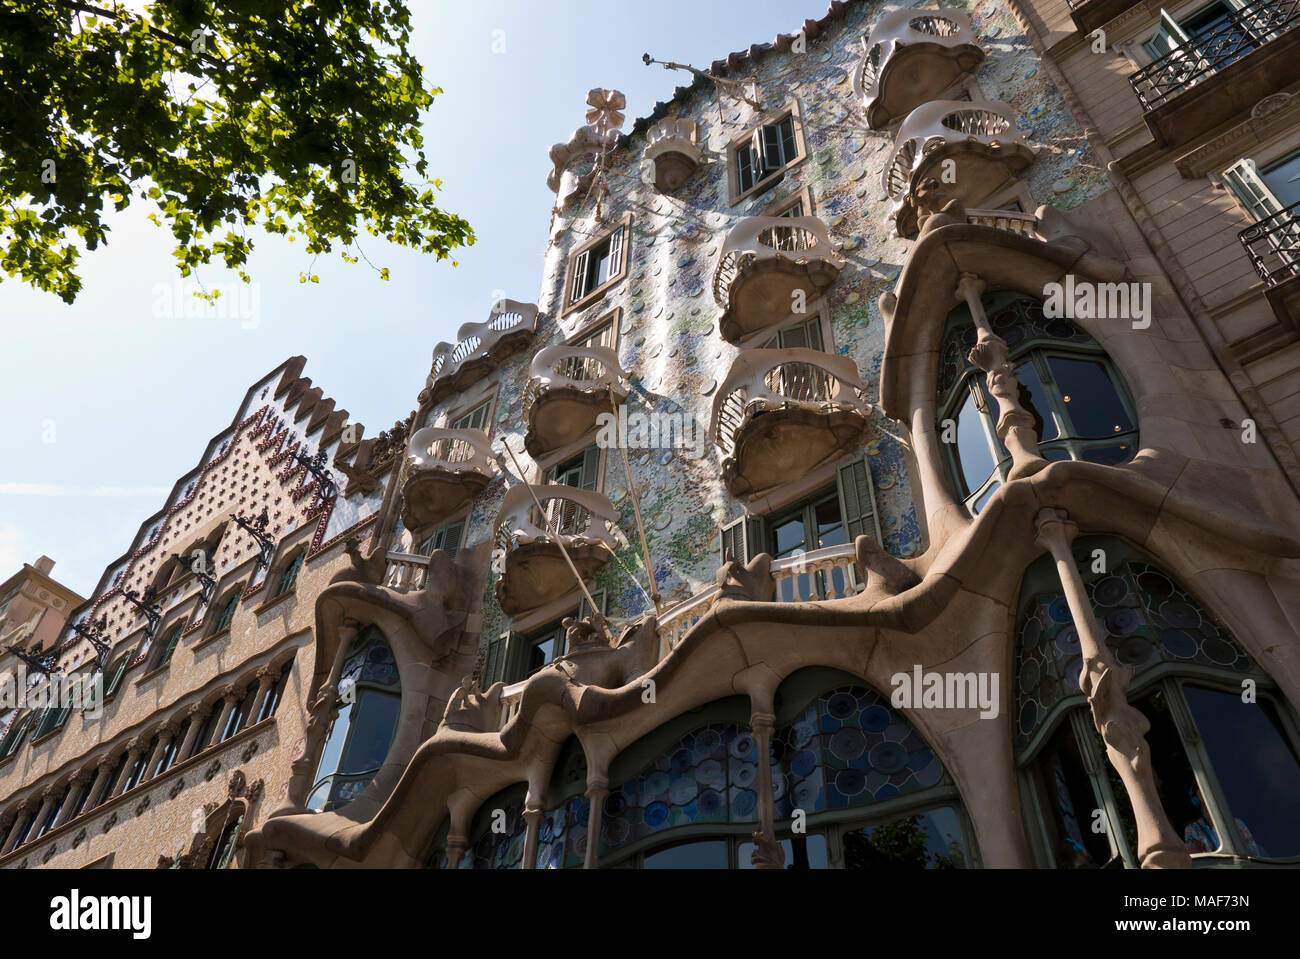 El exterior de la Casa Batlló, que está en el centro de Barcelona y es una de las obras maestras de Antoni Gaudí, España Foto de stock